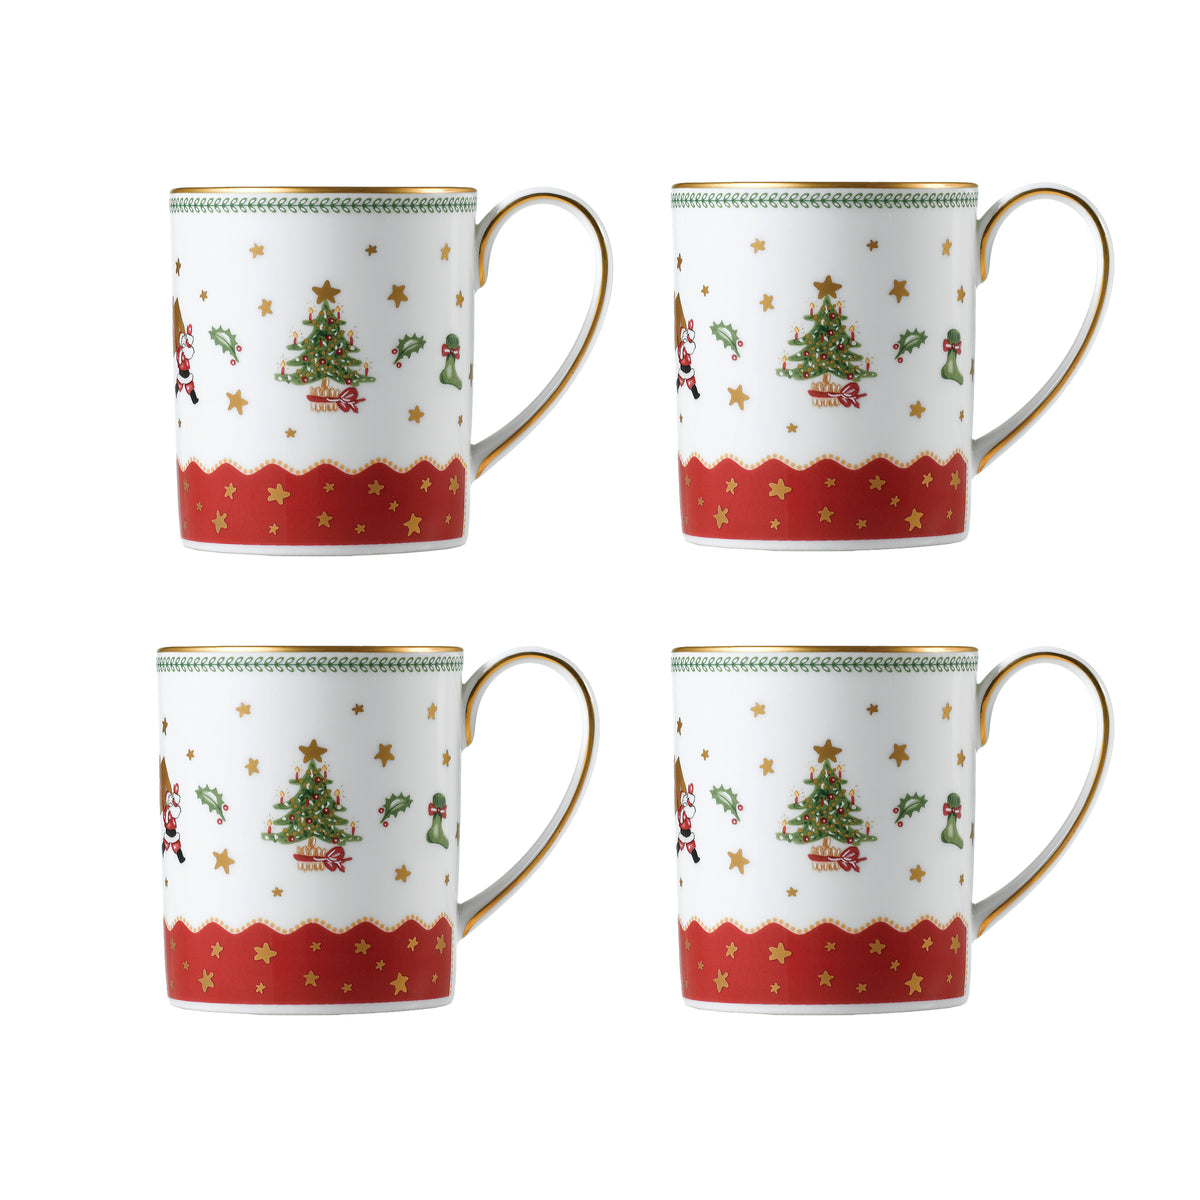 My Noel set of 4 mugs